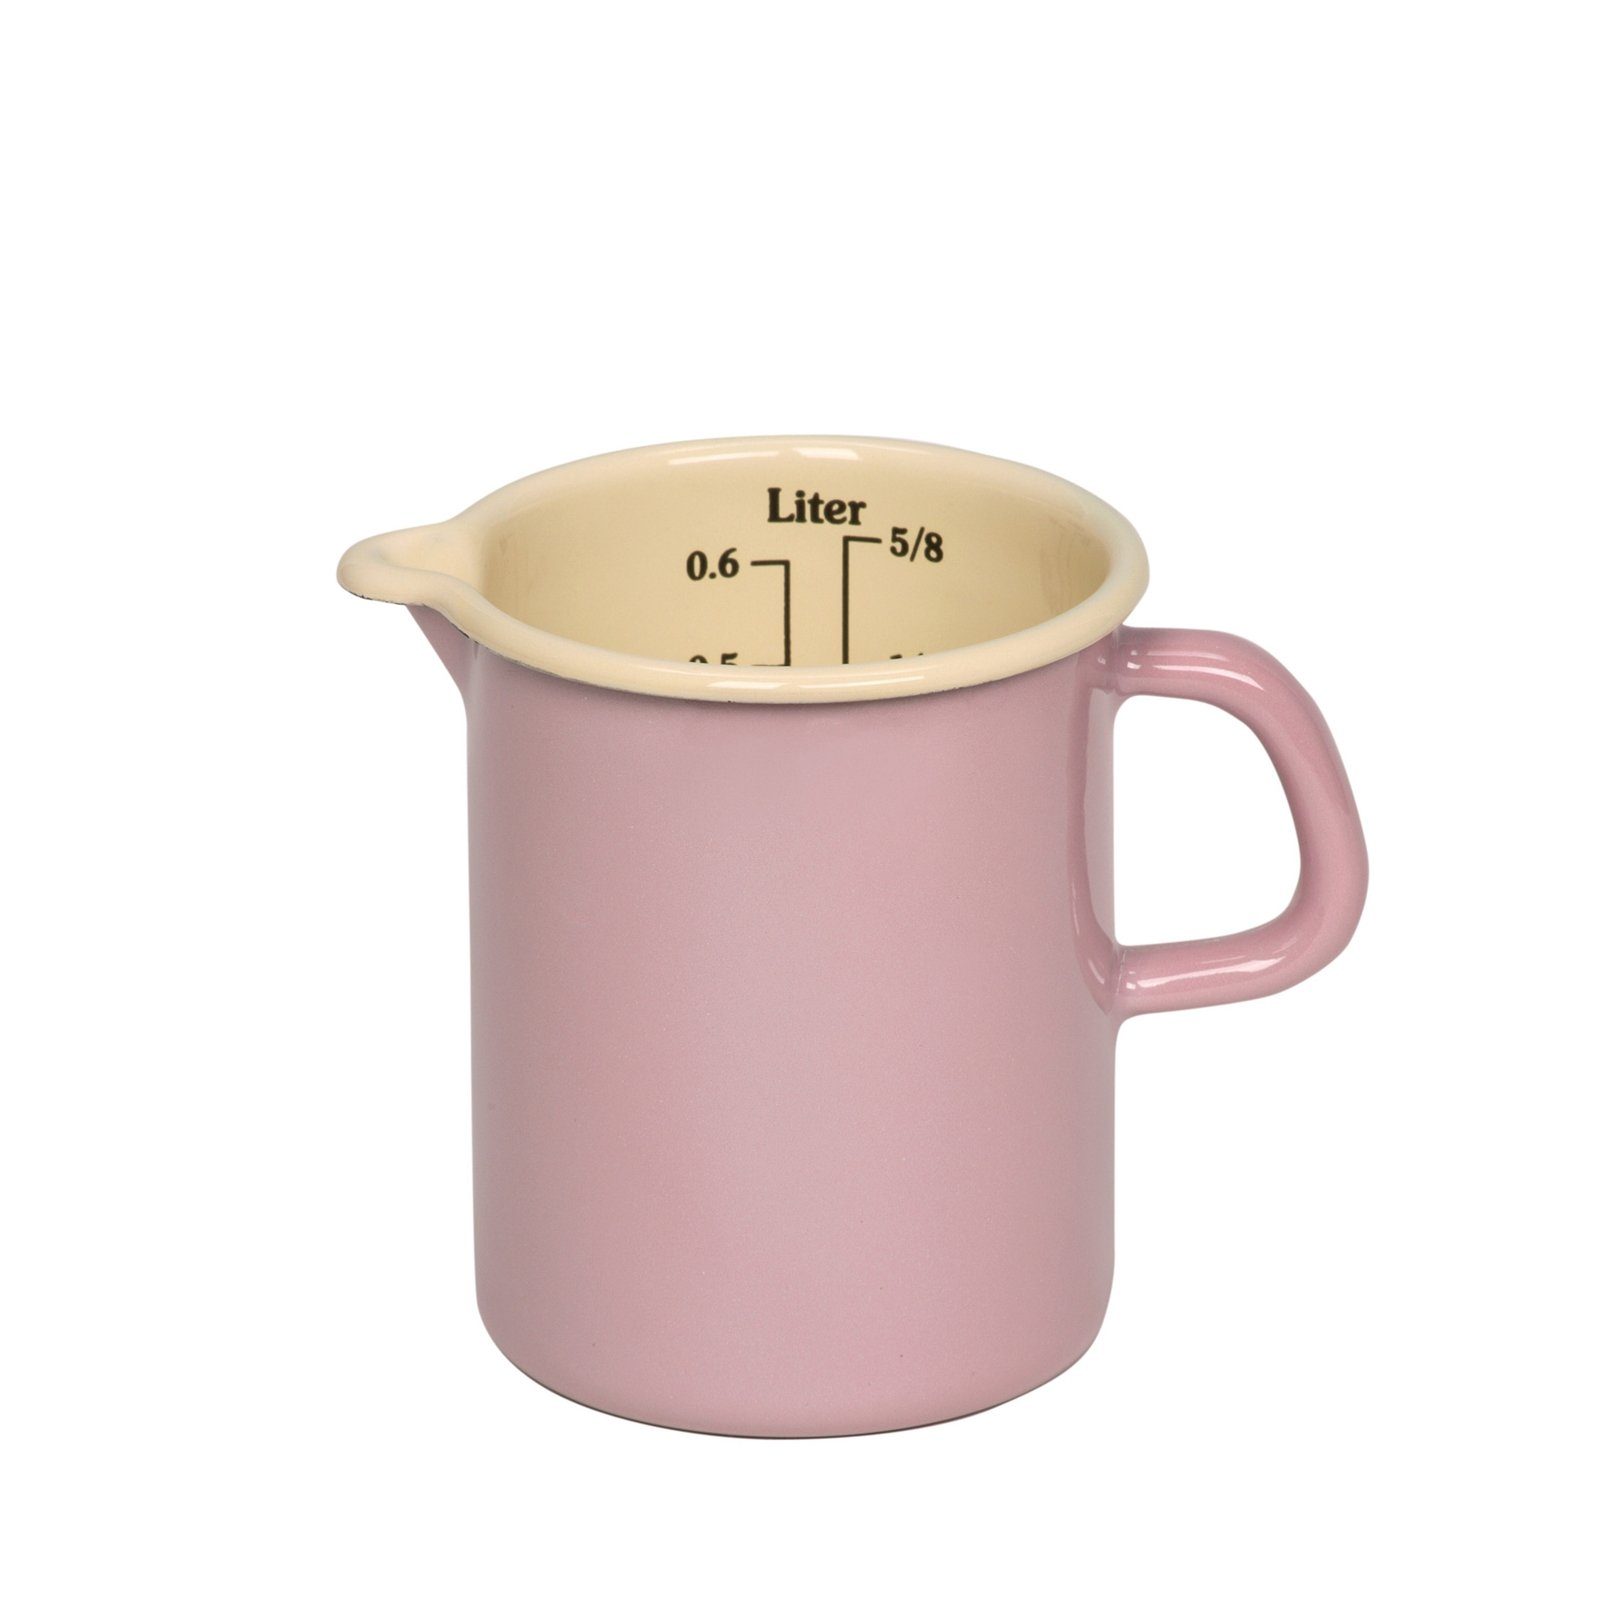 Riess Messbecher Küchenmaß 9 cm rosa Empfohlen Nickelallergie Color, Premium-Email, bei Classic